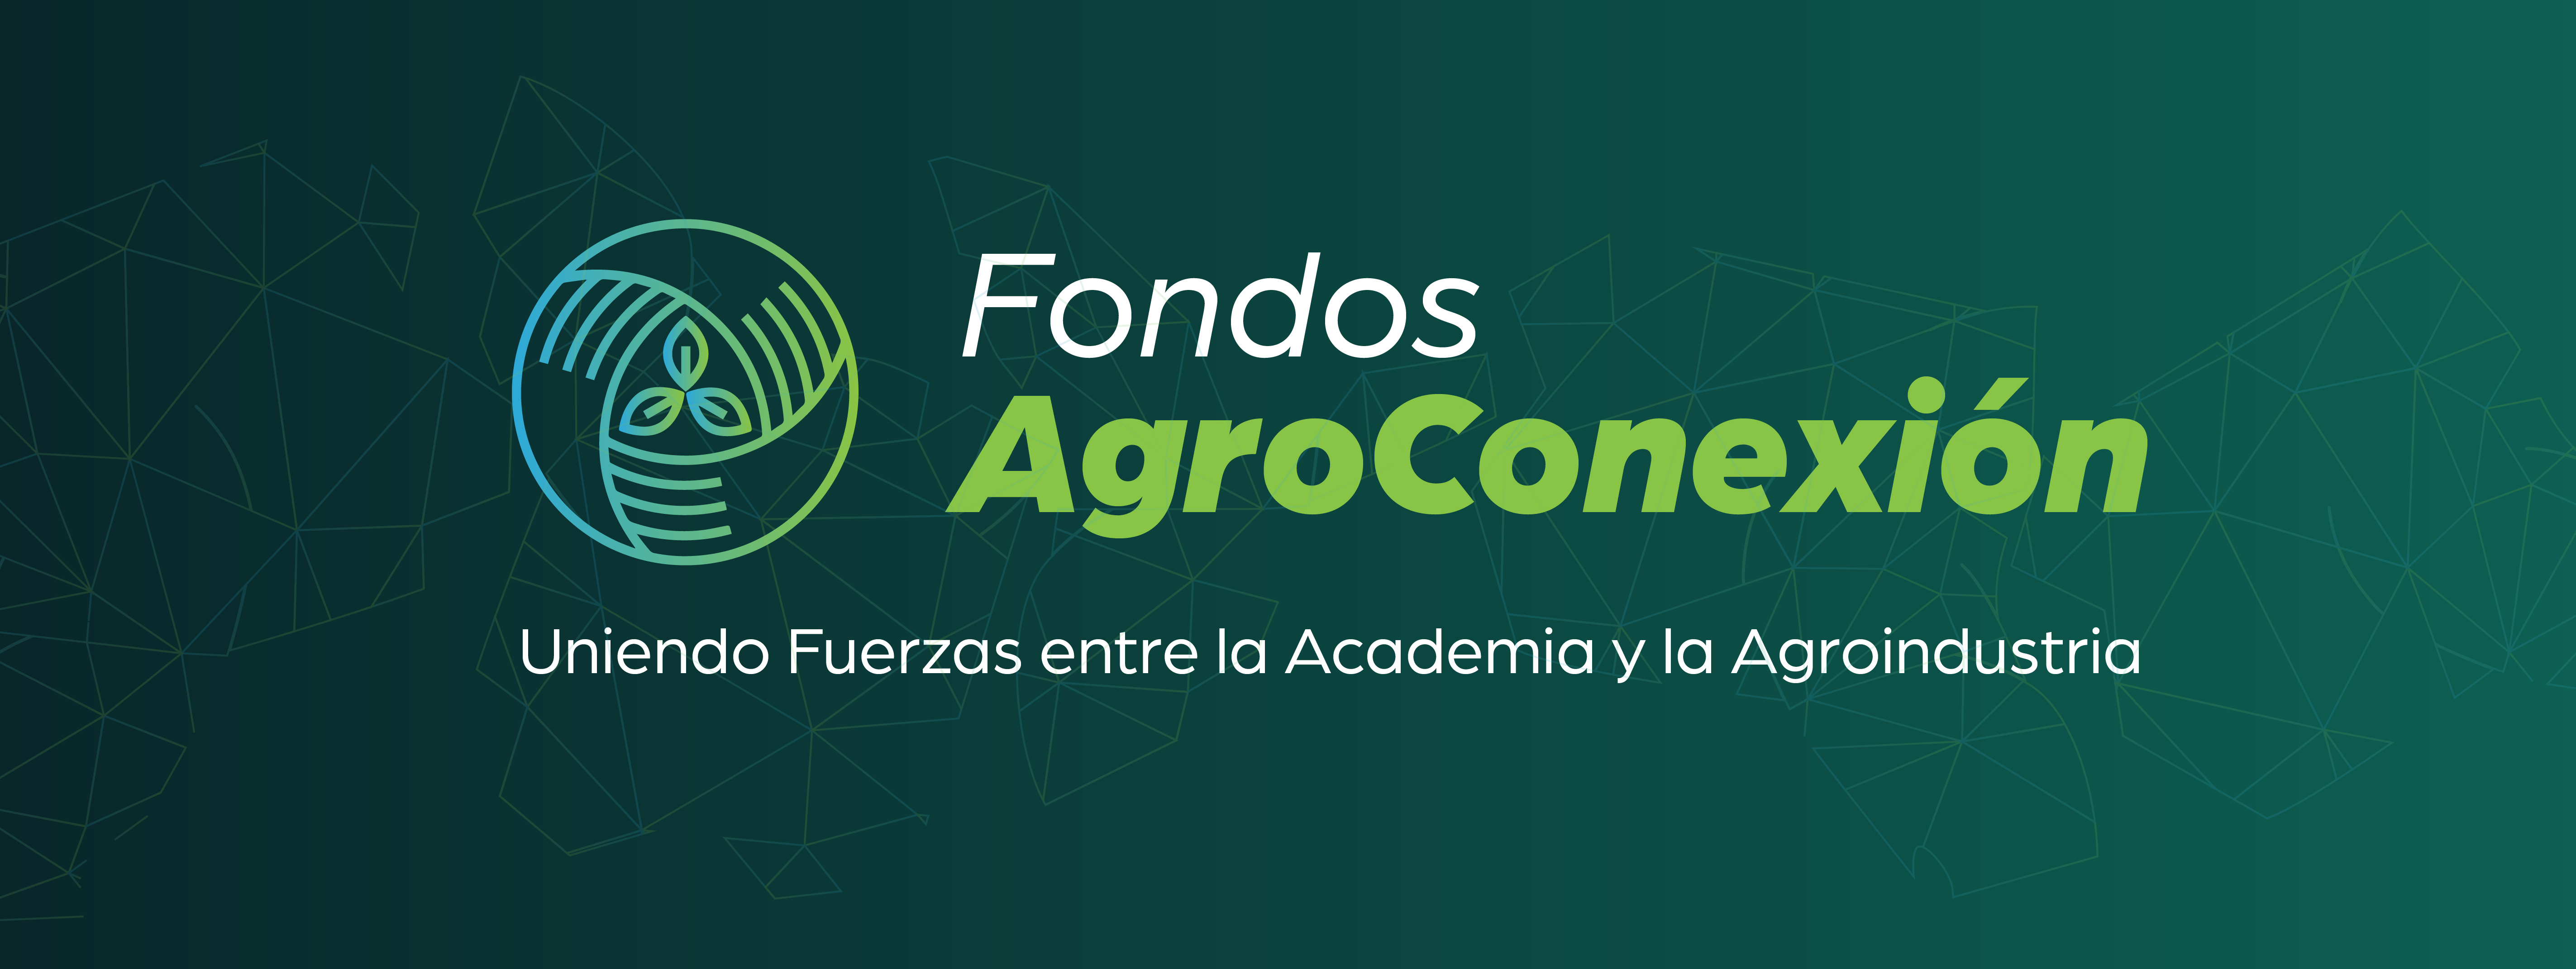 Banner web fondos agroconexion